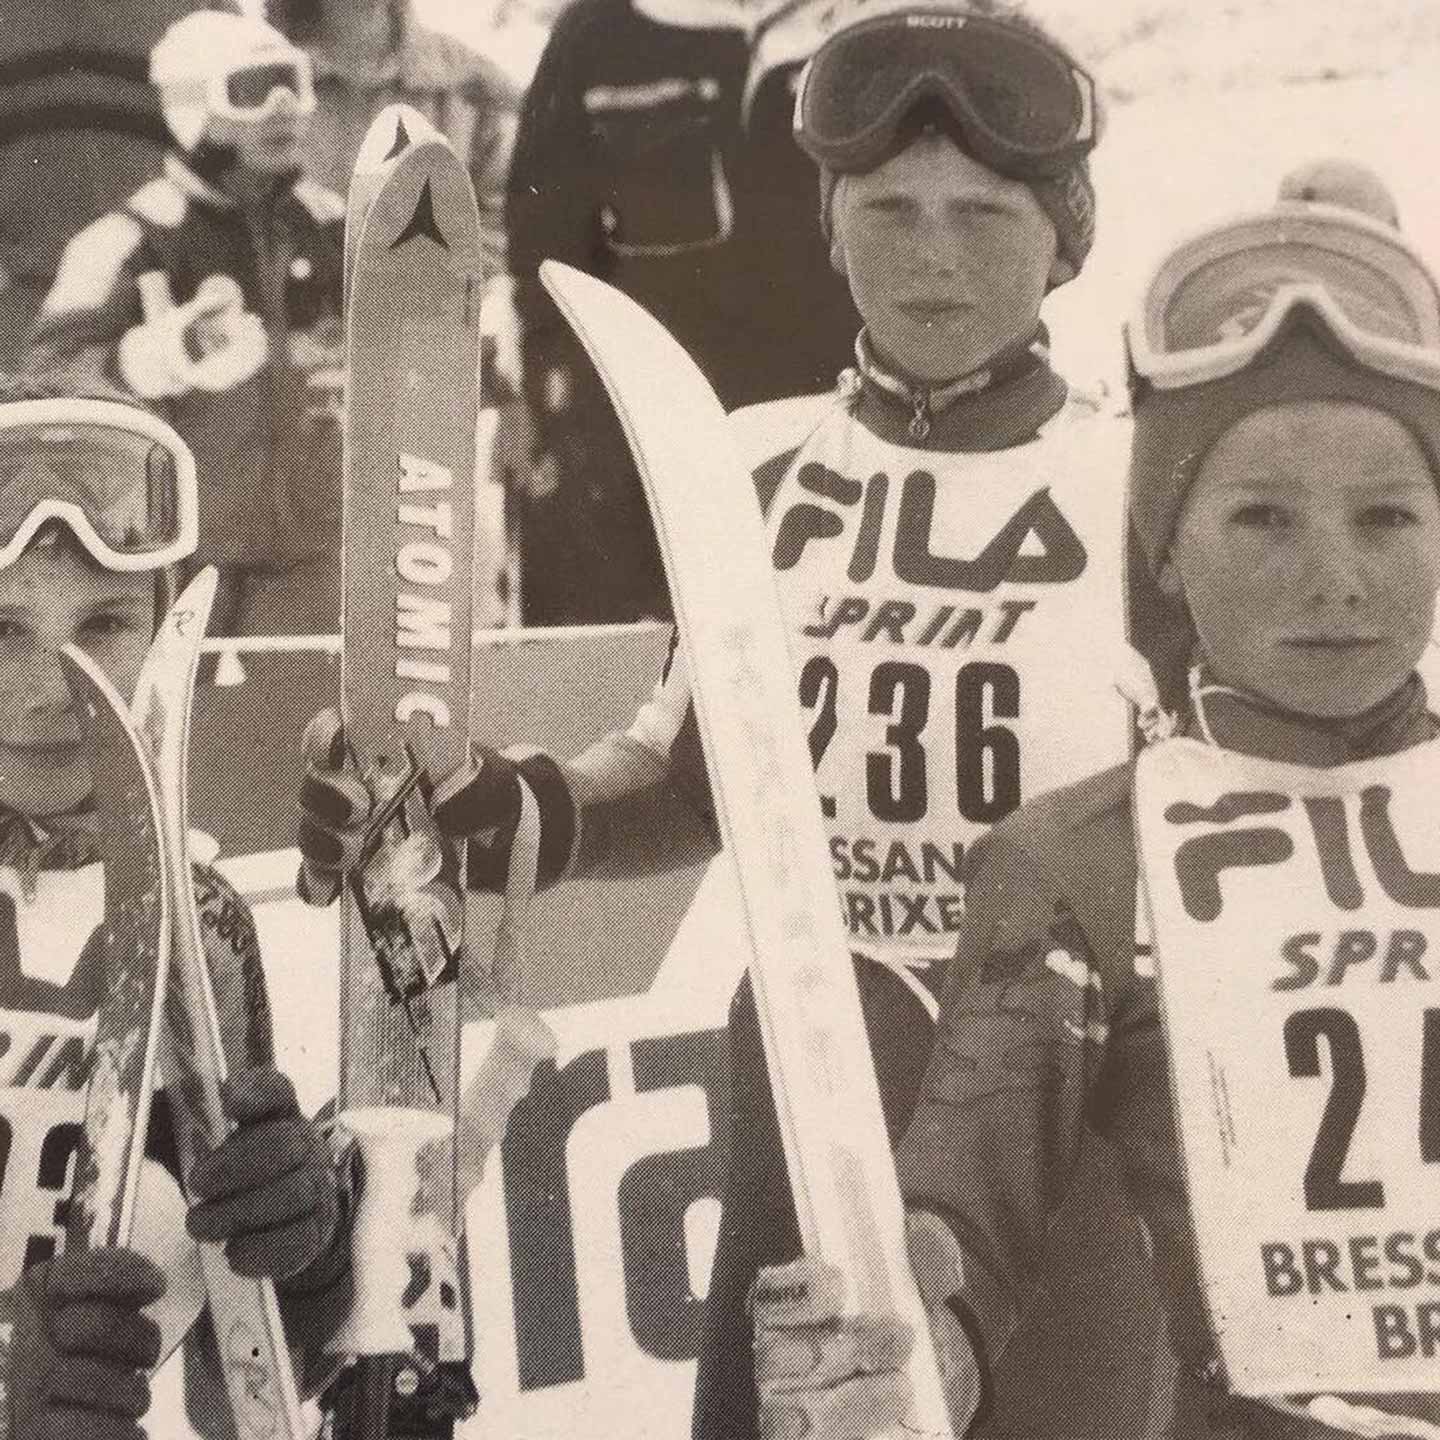 Ski Star Werner Heel damals